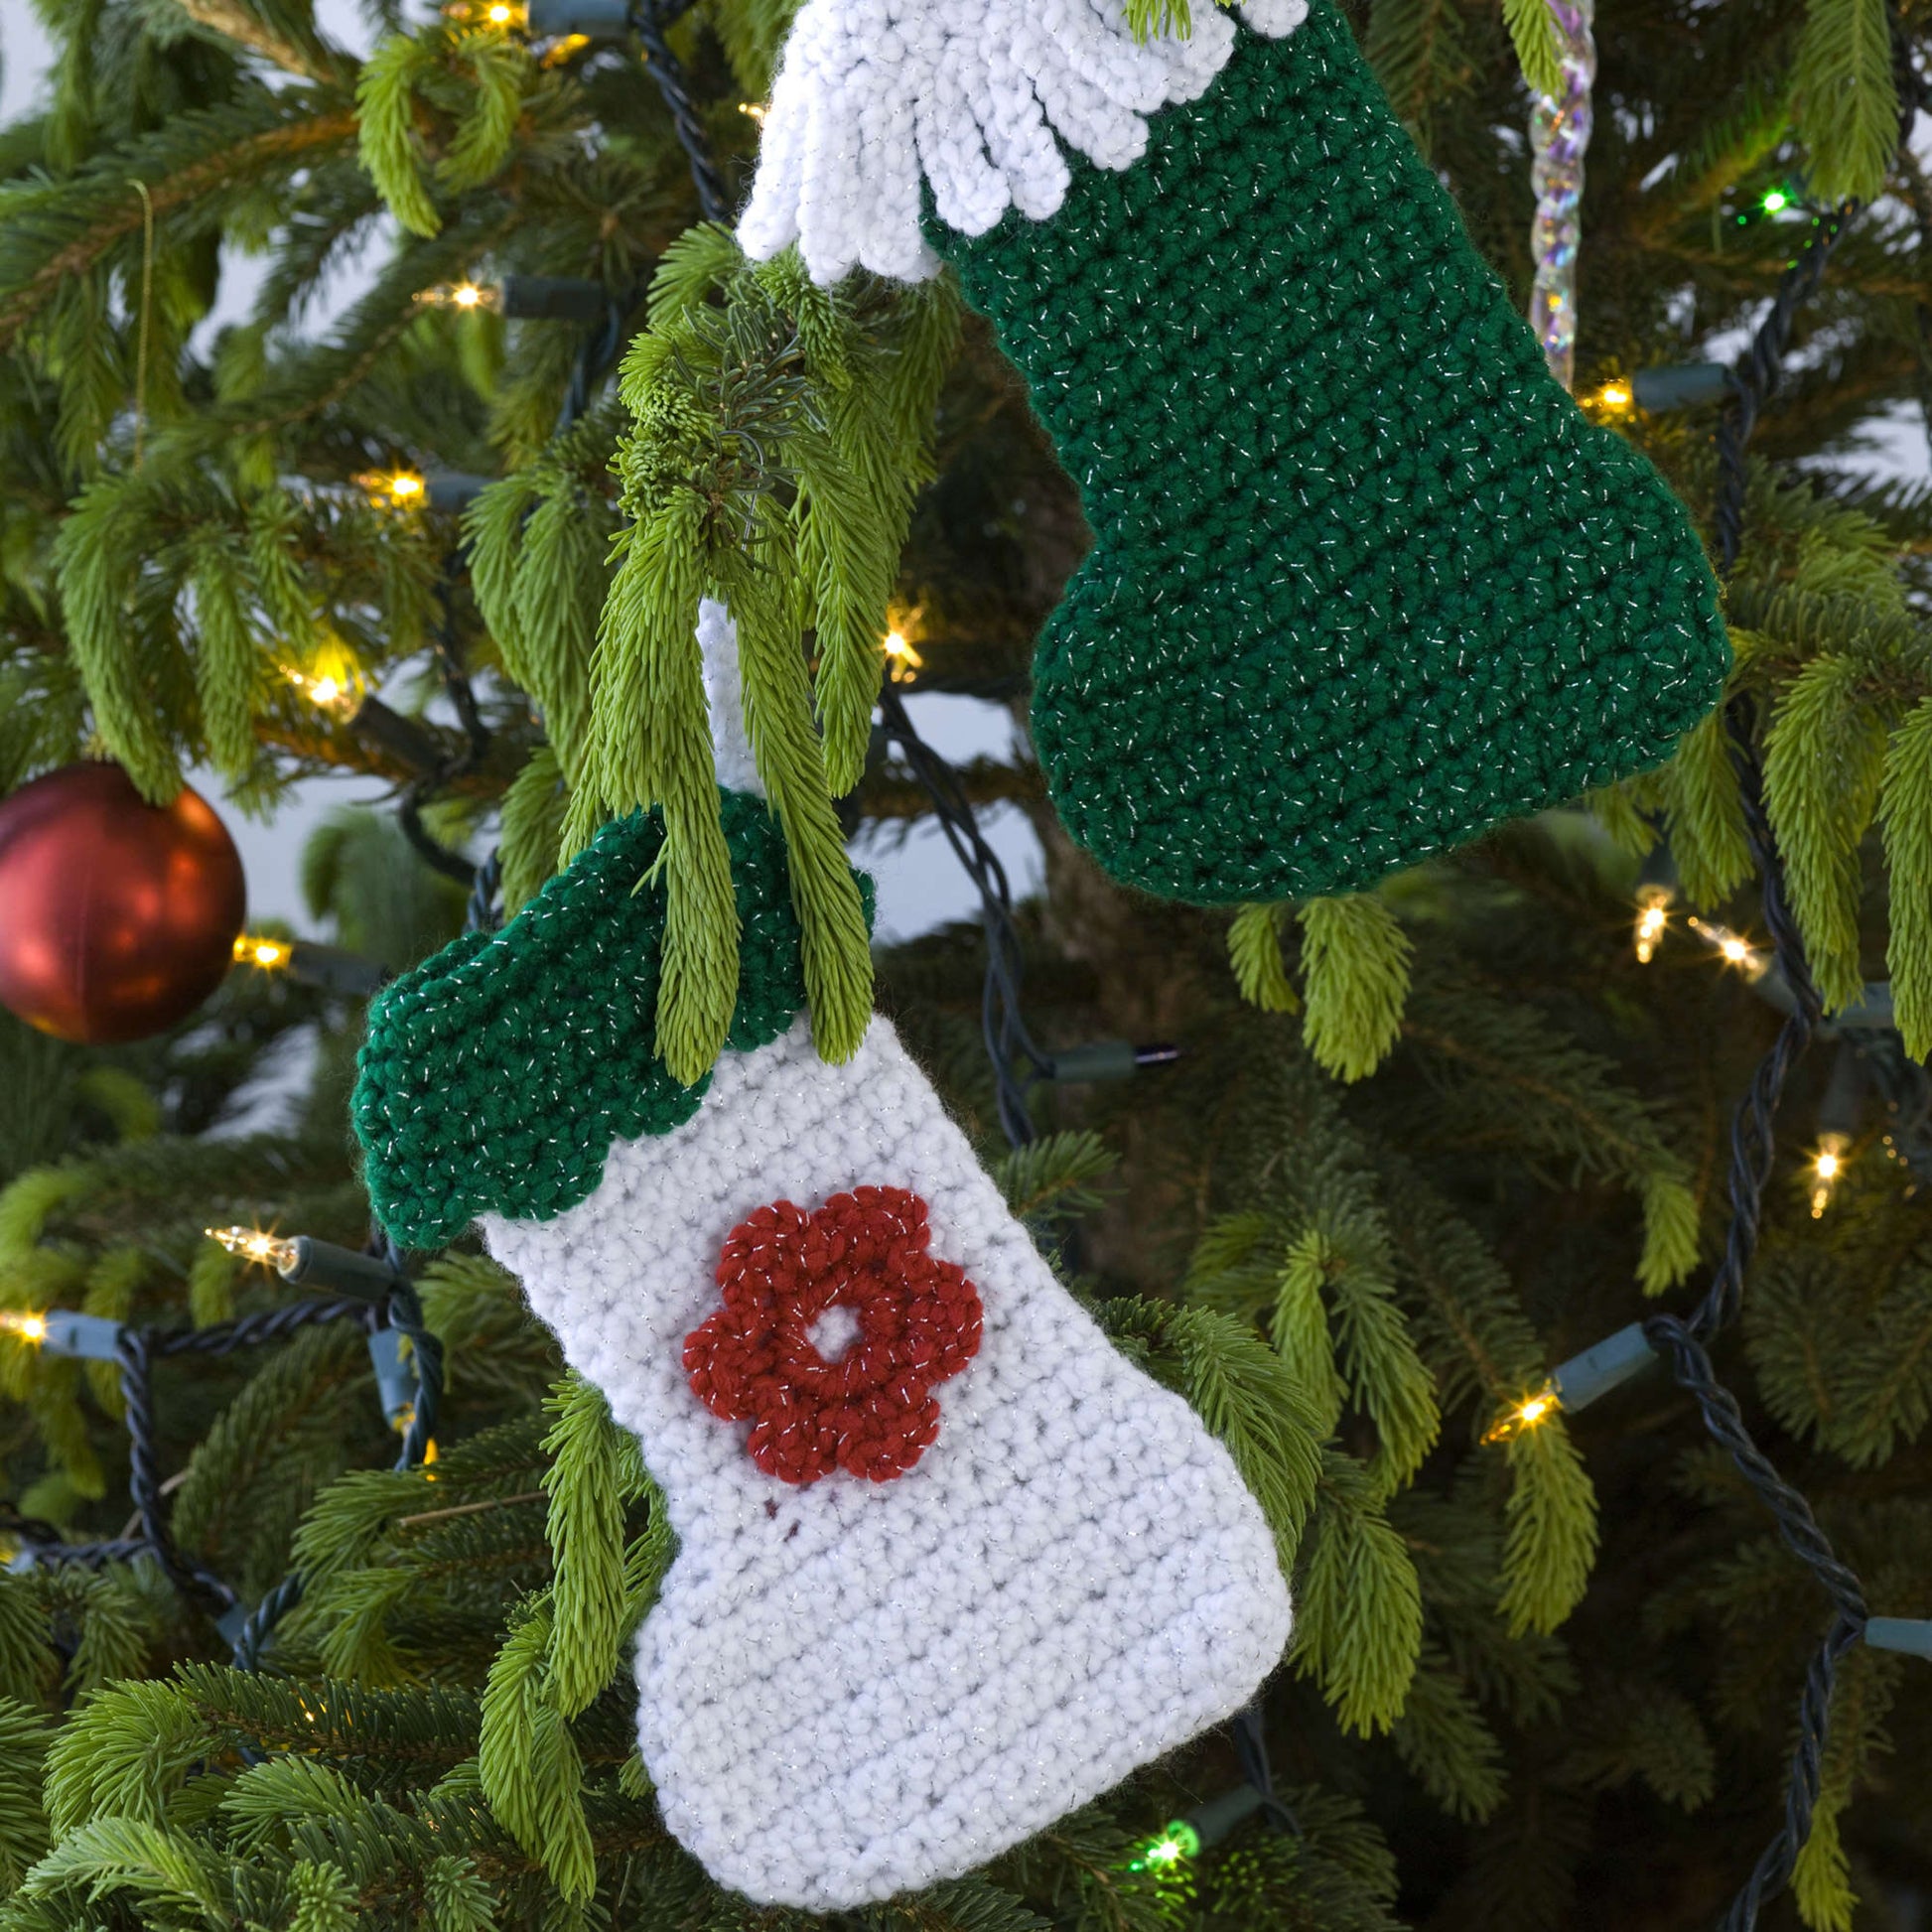 Free Red Heart Crochet Little Stockings Ornaments Pattern